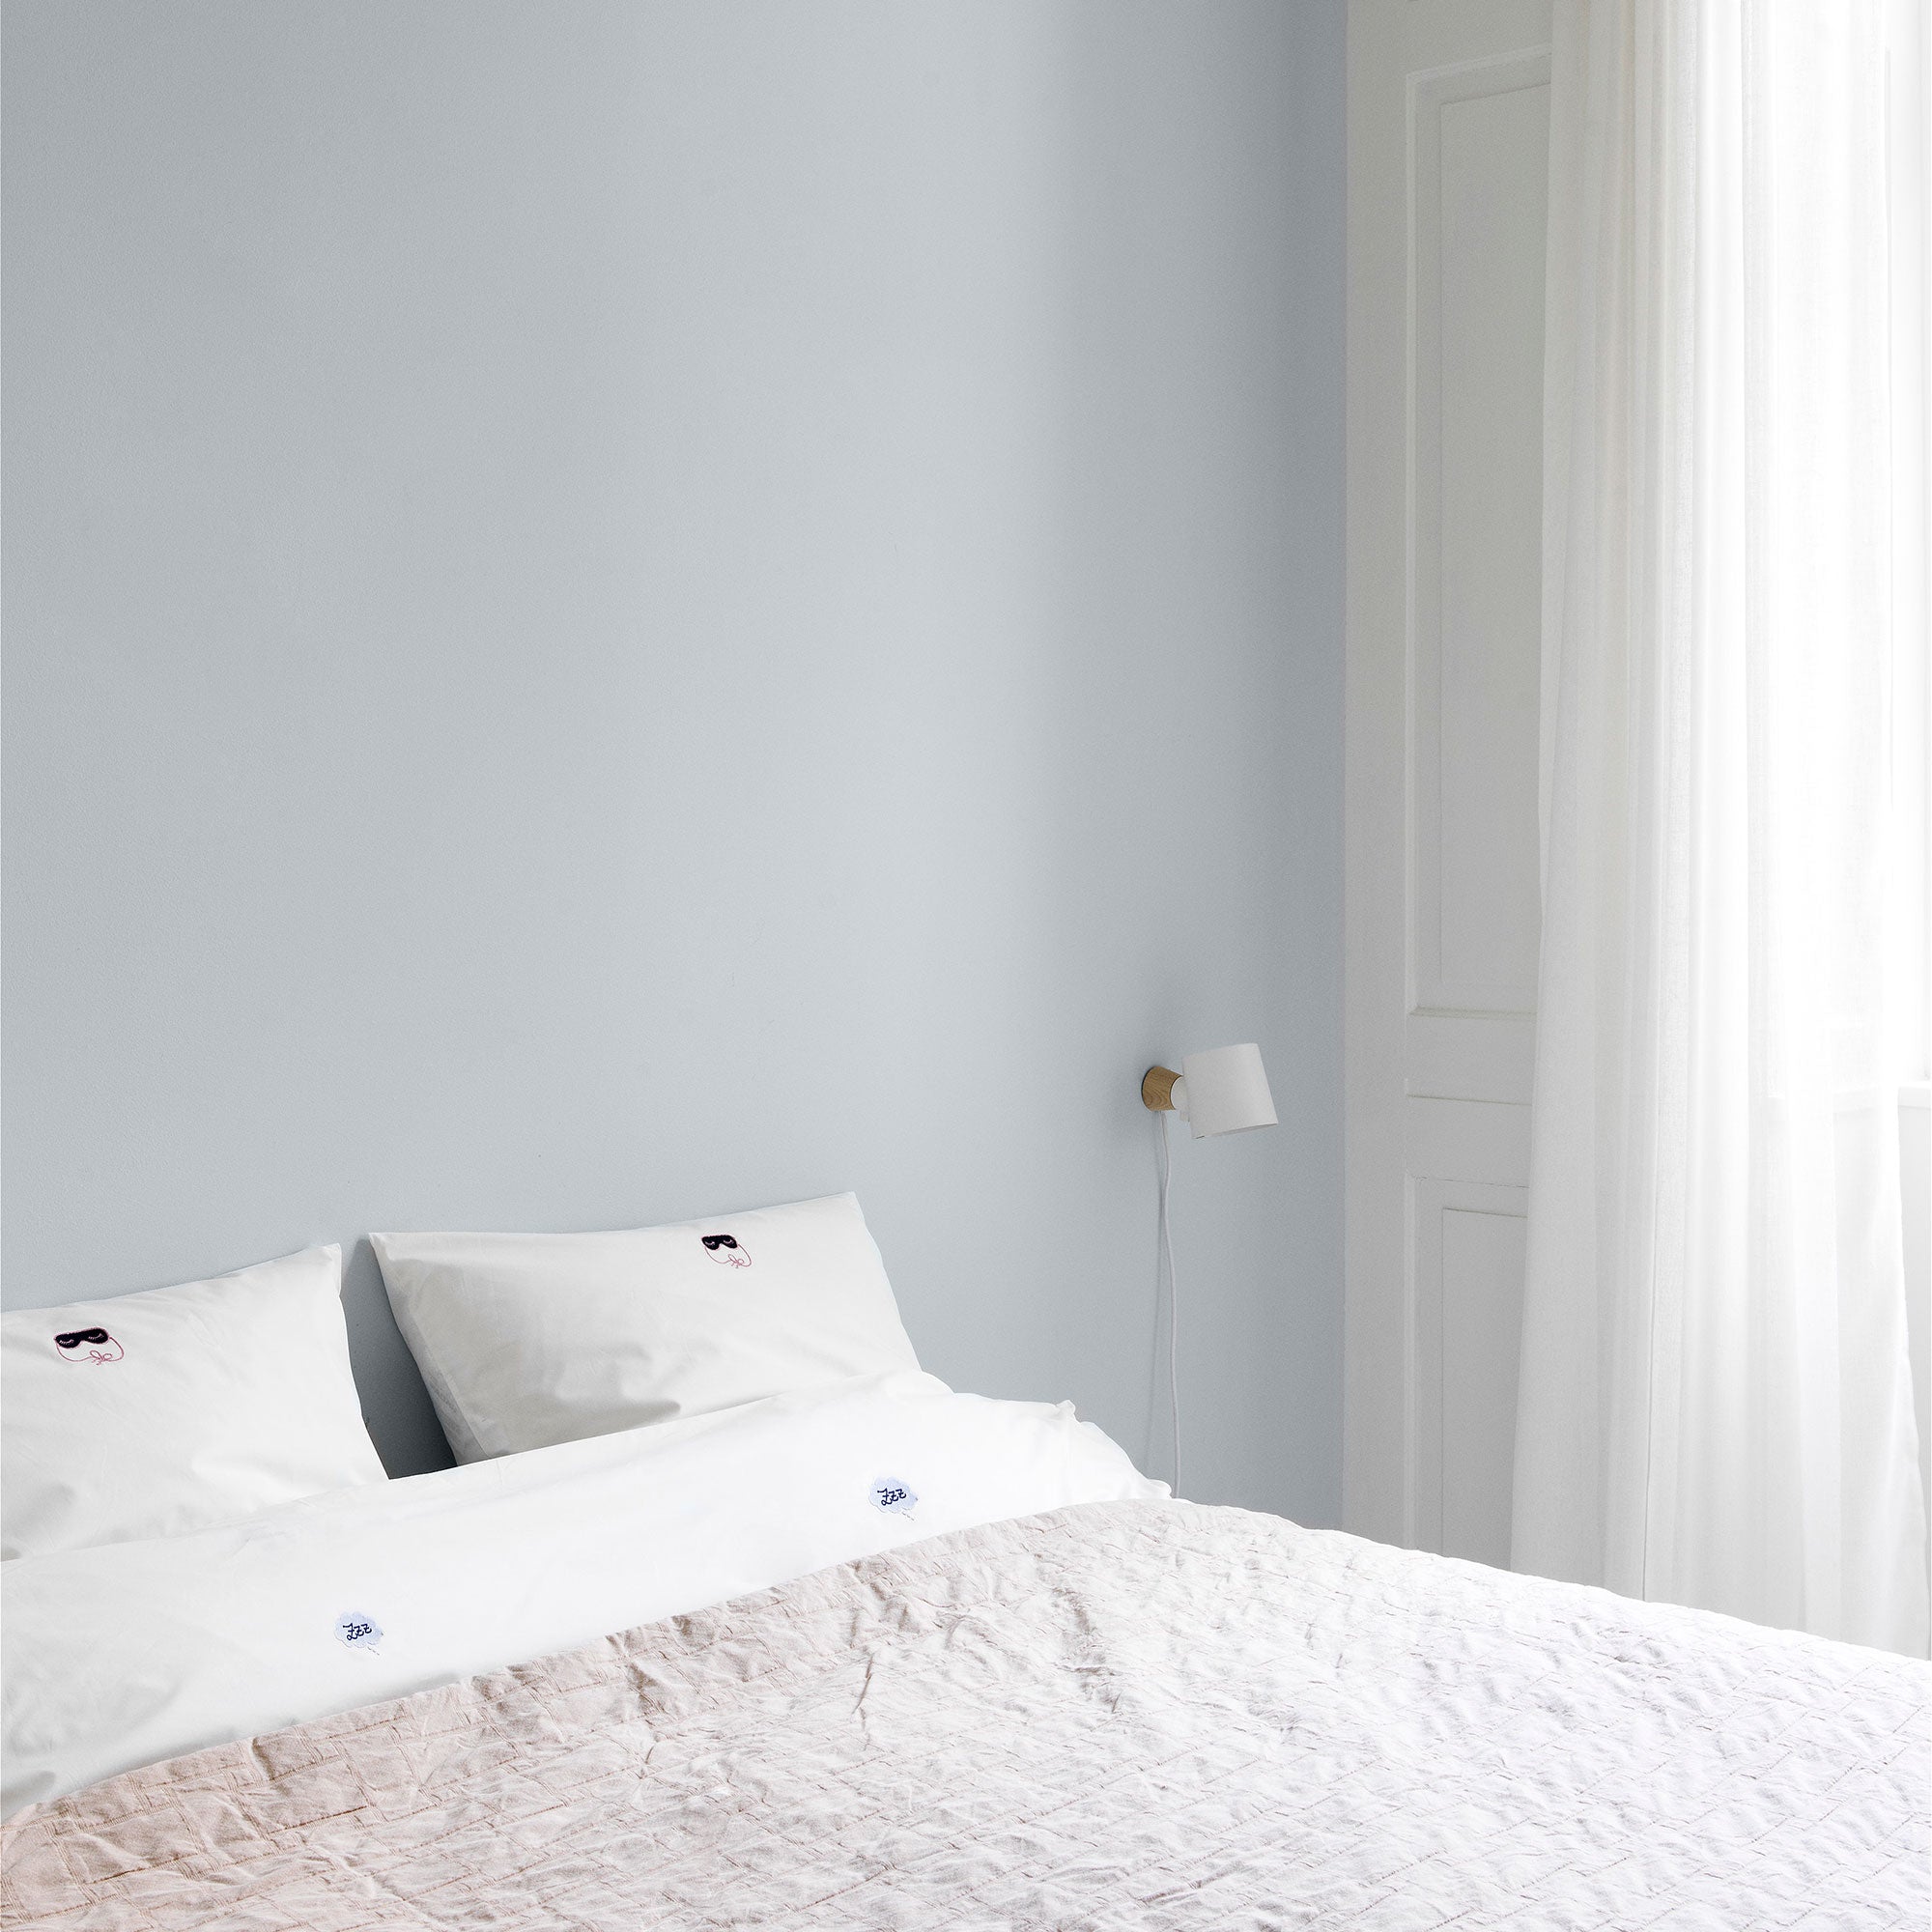 Snooze Bed Linen, așternuturi de pat 200x200cm